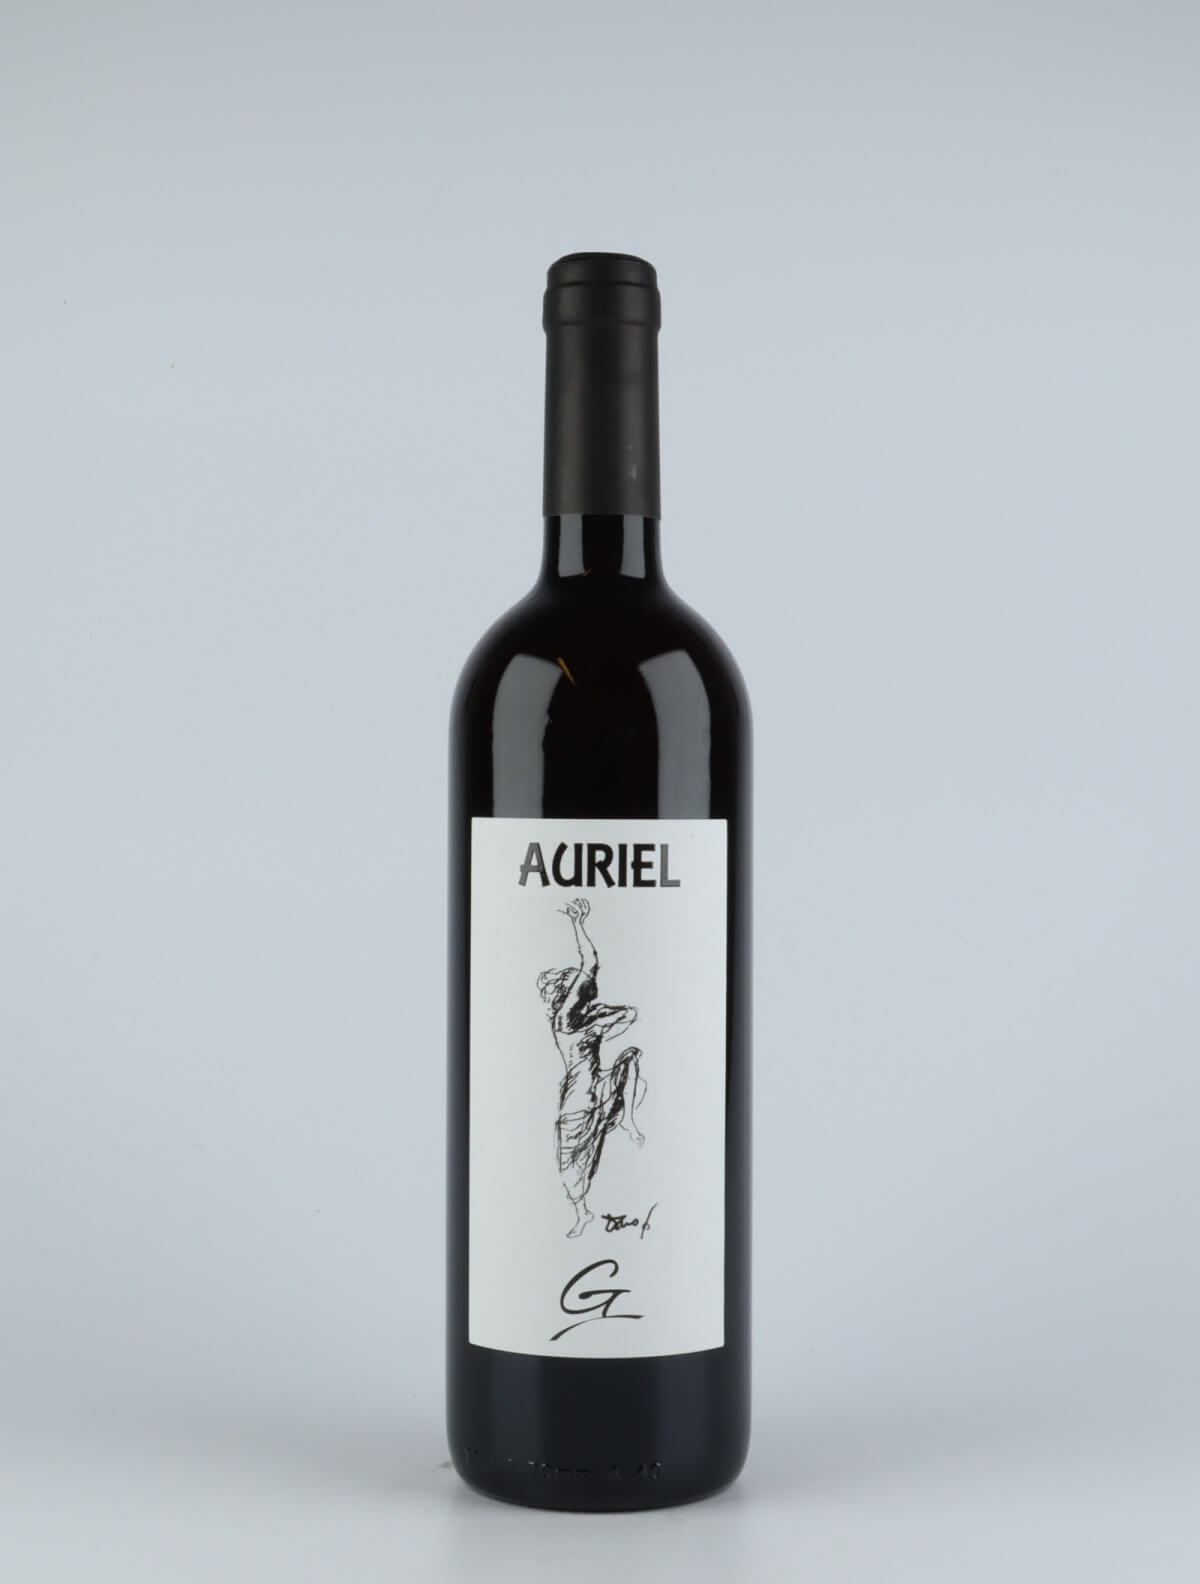 En flaske 2018 G Rødvin fra Auriel, Piemonte i Italien